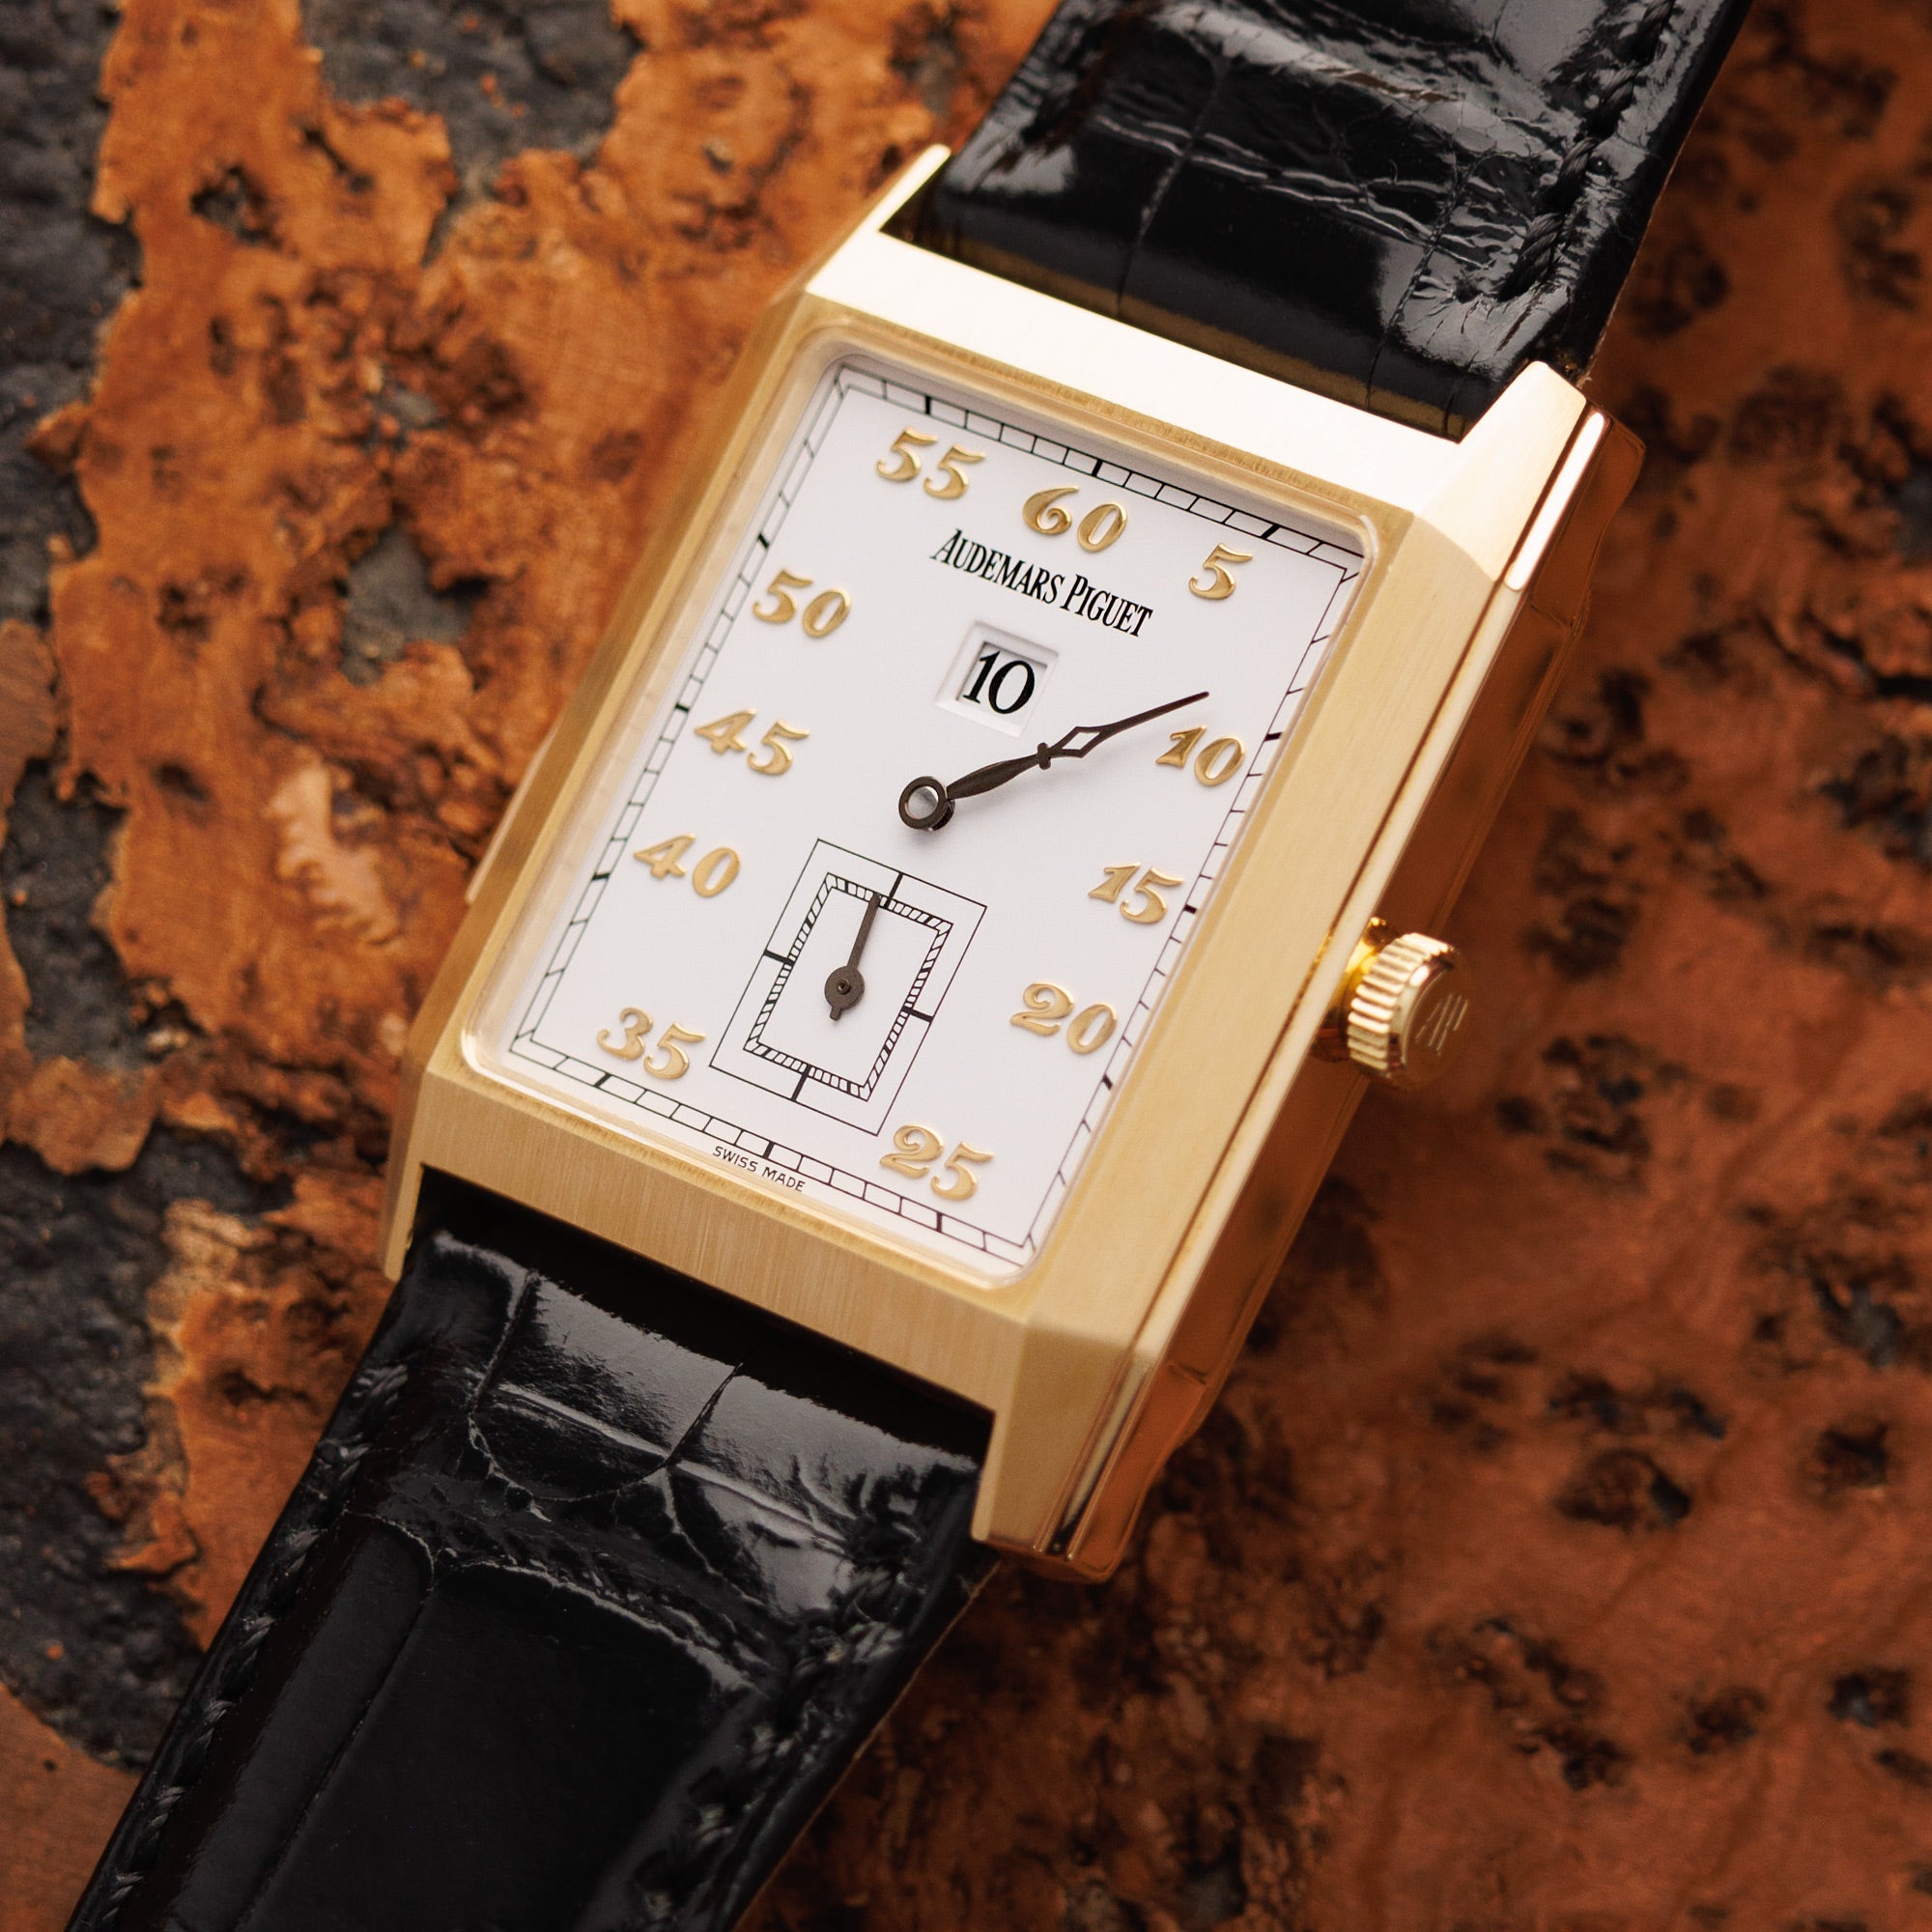 Audemars Piguet - Audemars Piguet Yellow Gold Minute Repeater Ref. 25723 - The Keystone Watches